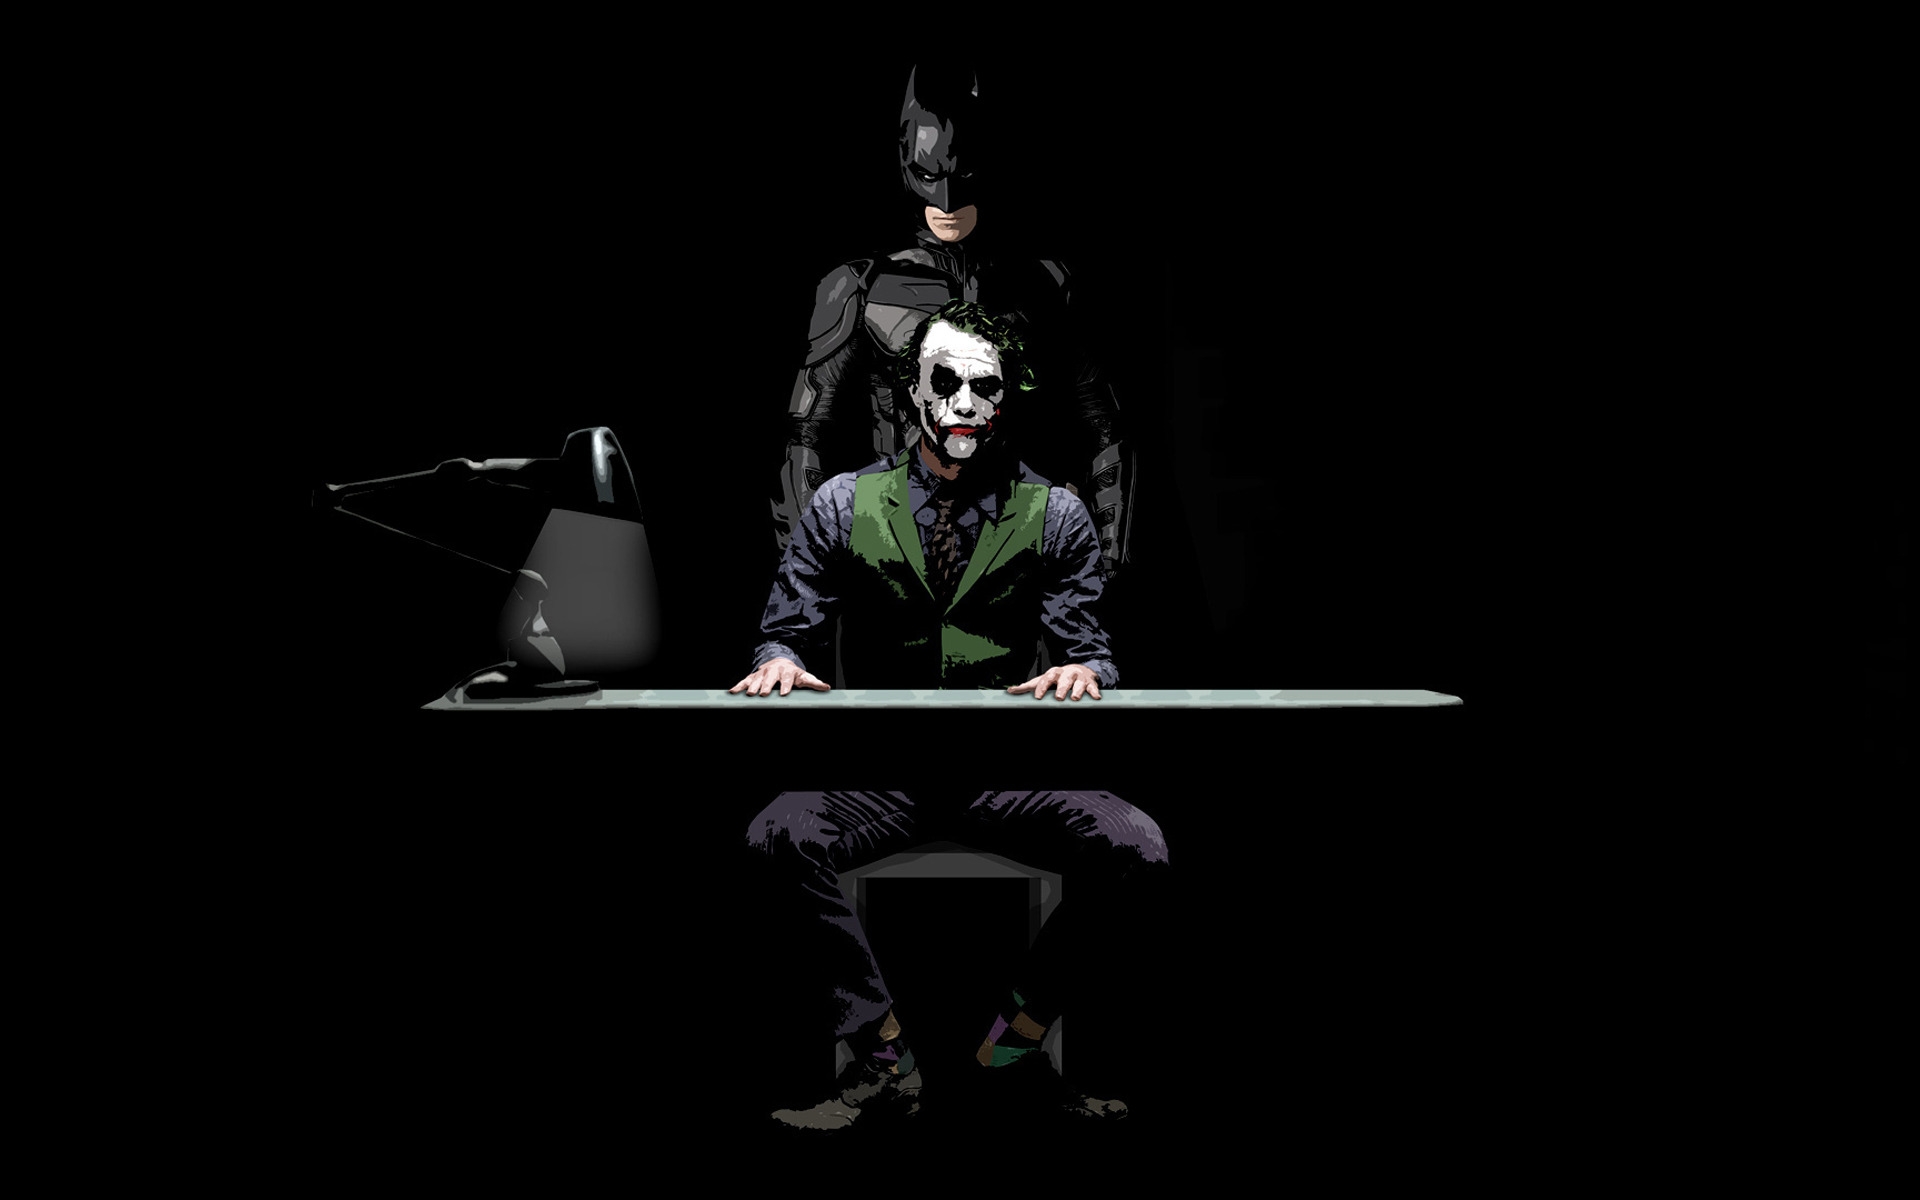 Batman and Joker Sketch for 1920 x 1200 widescreen resolution